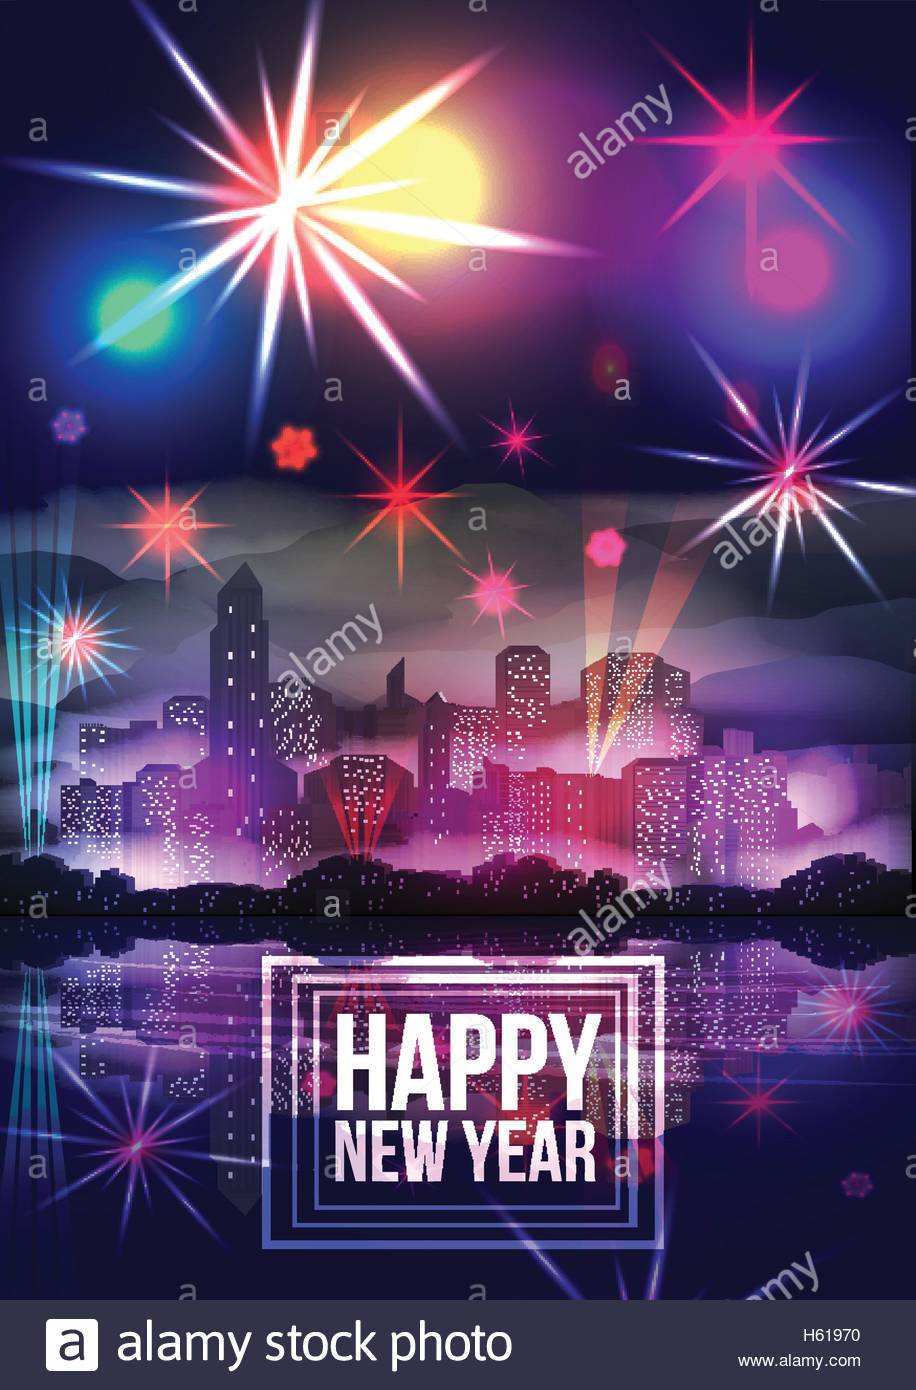 Silvester Party Plakat Vorlage Mit Skyline Der Stadt Und Einem Feuerwerk Vektor Illustration Stock Vektorgrafik Alamy